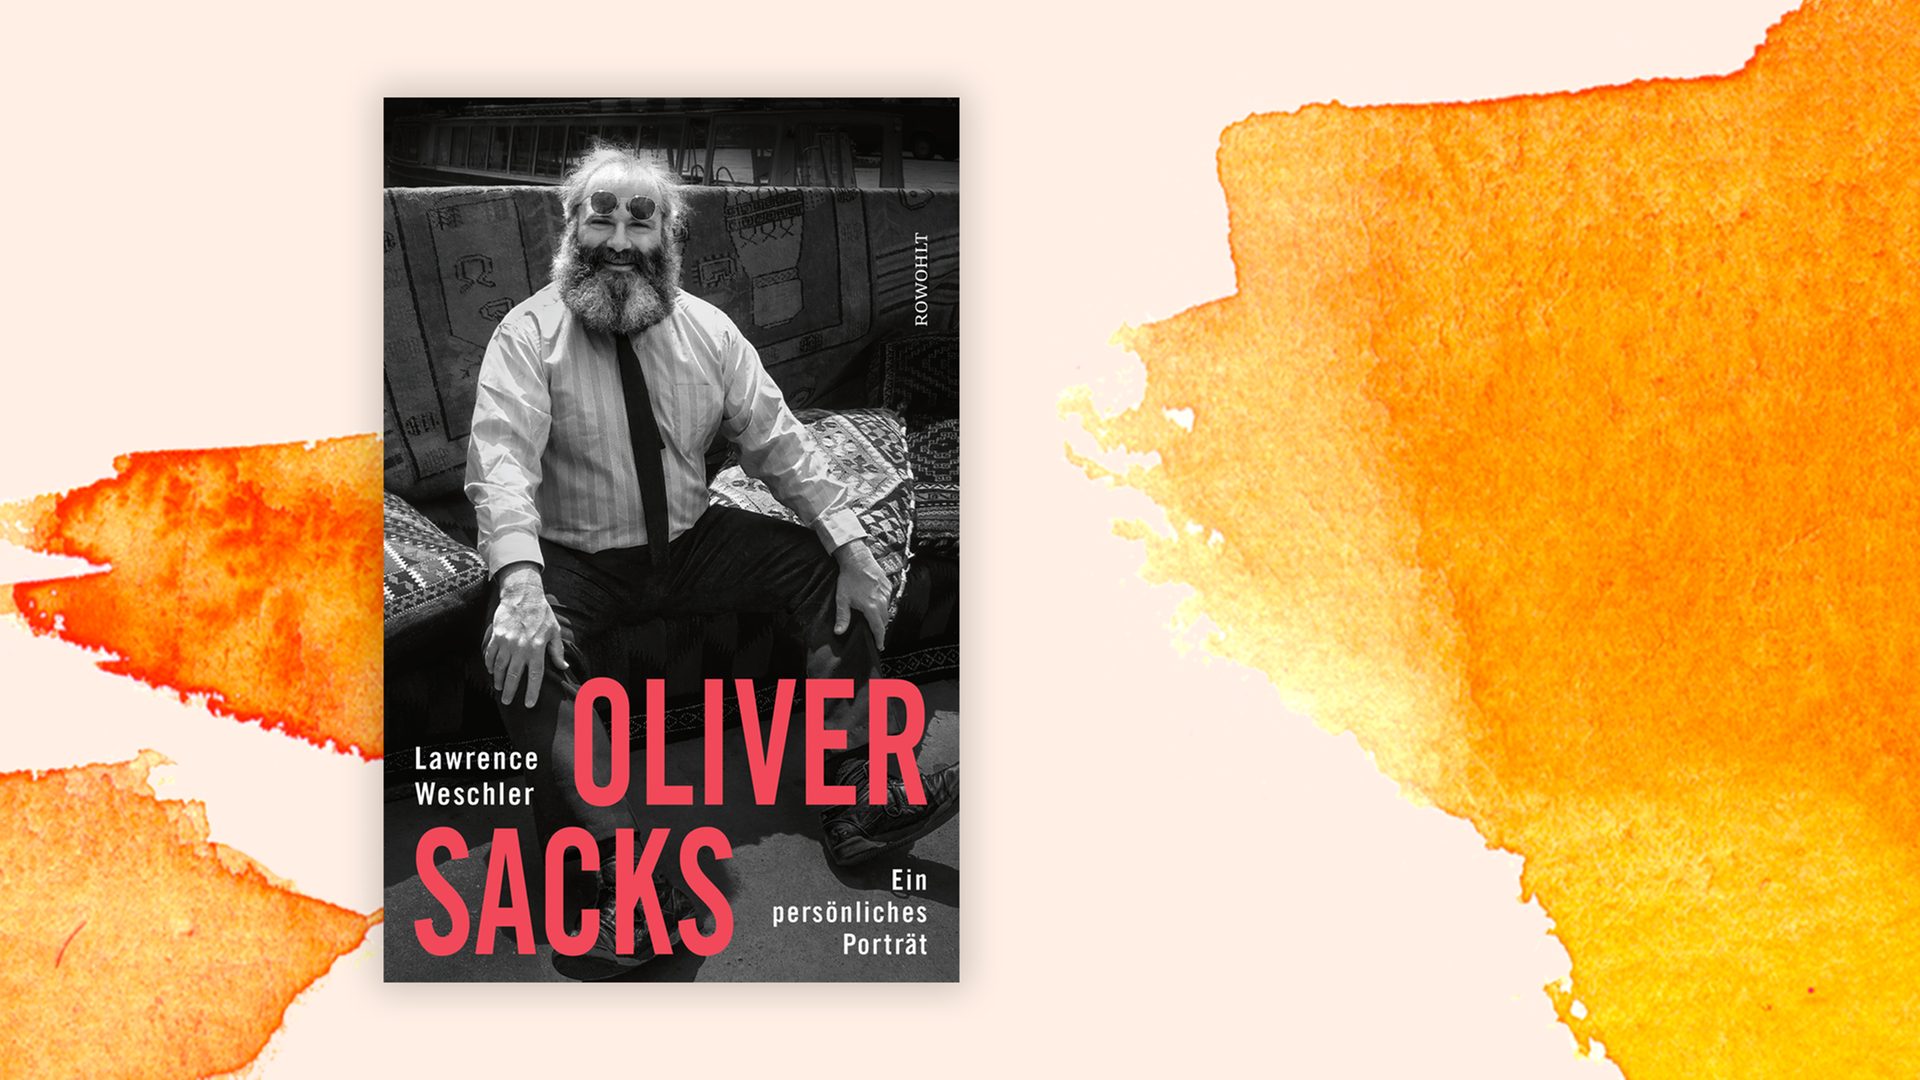 Zu sehen ist das Buchn "Oliver Sacks – Ein persönliches Porträt" von Lawrence Weschler.